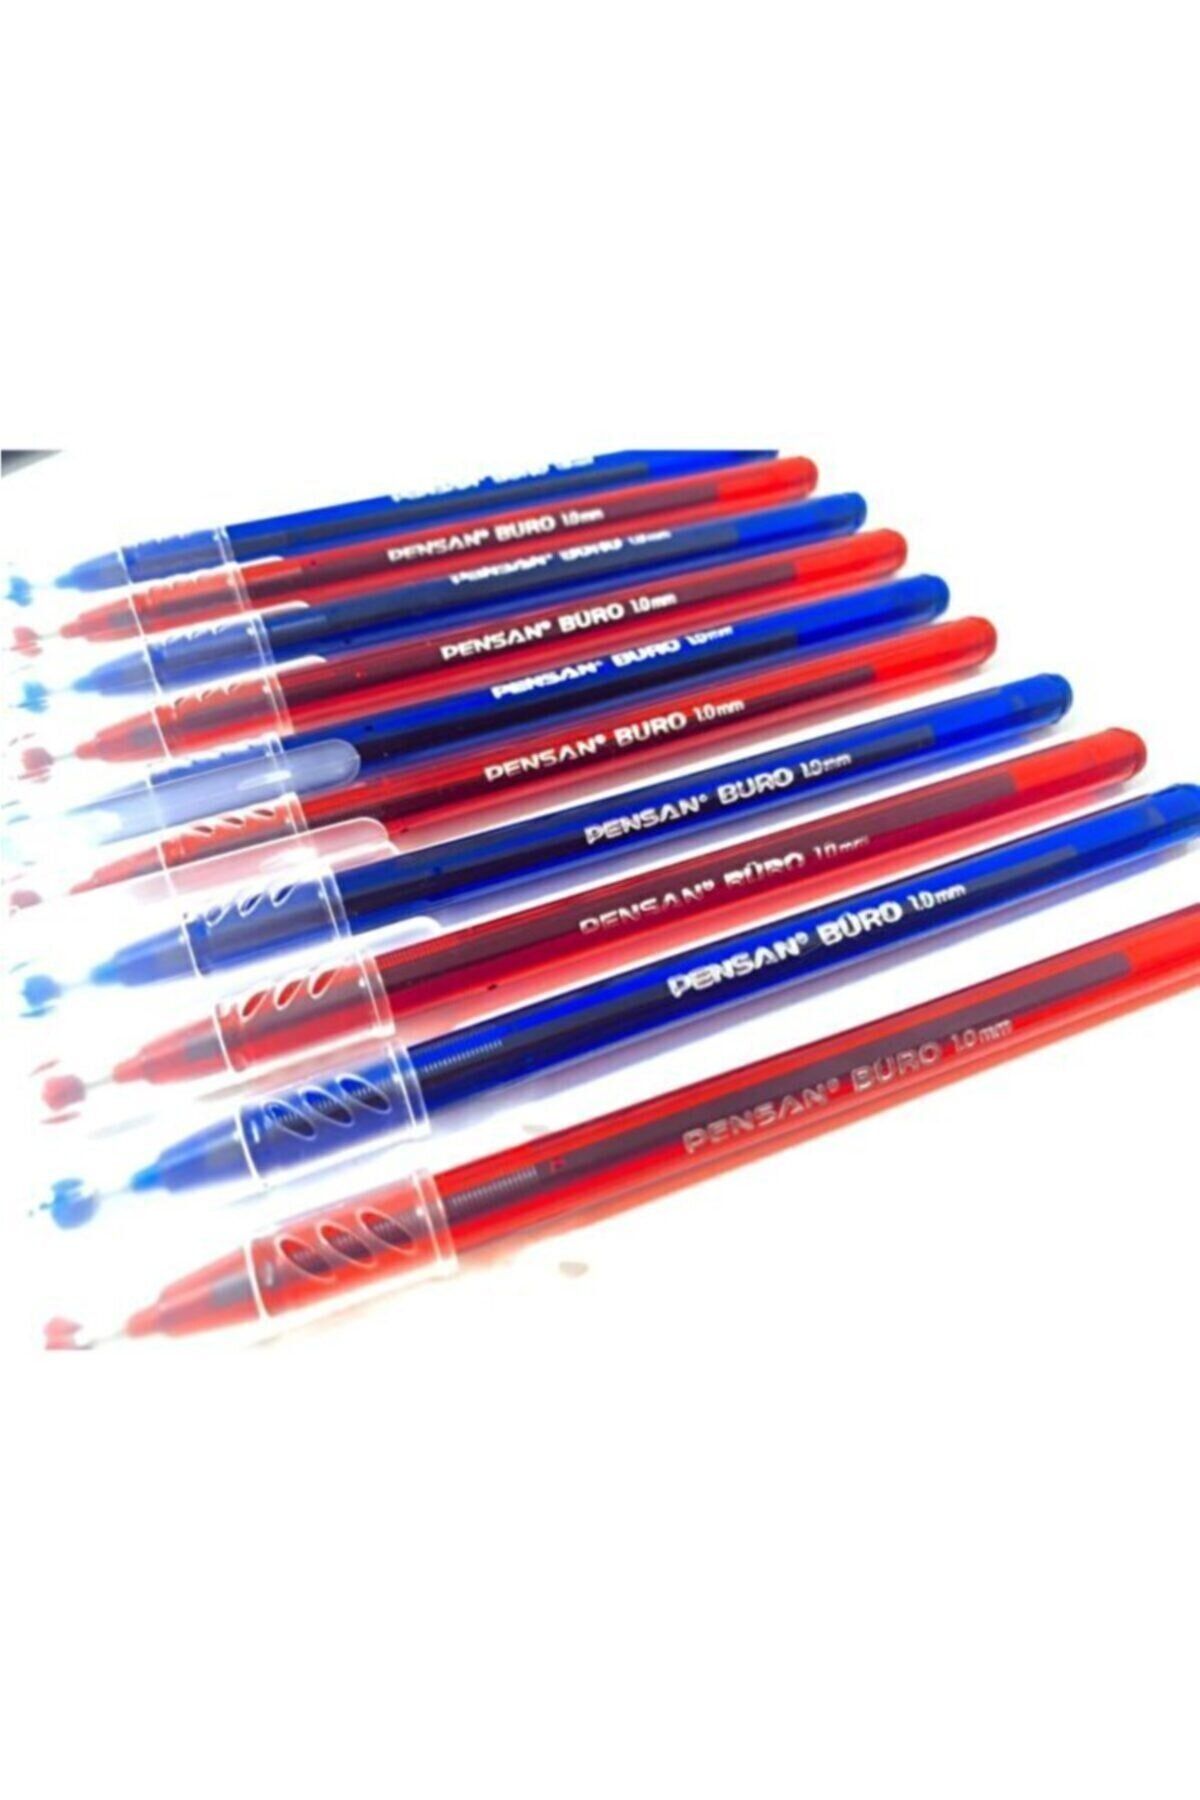 Pensan Büro 1.0 Mm Tükenmez Kalem 5 Kırmızı Kalem, 5 Mavi Kalem Tk.k